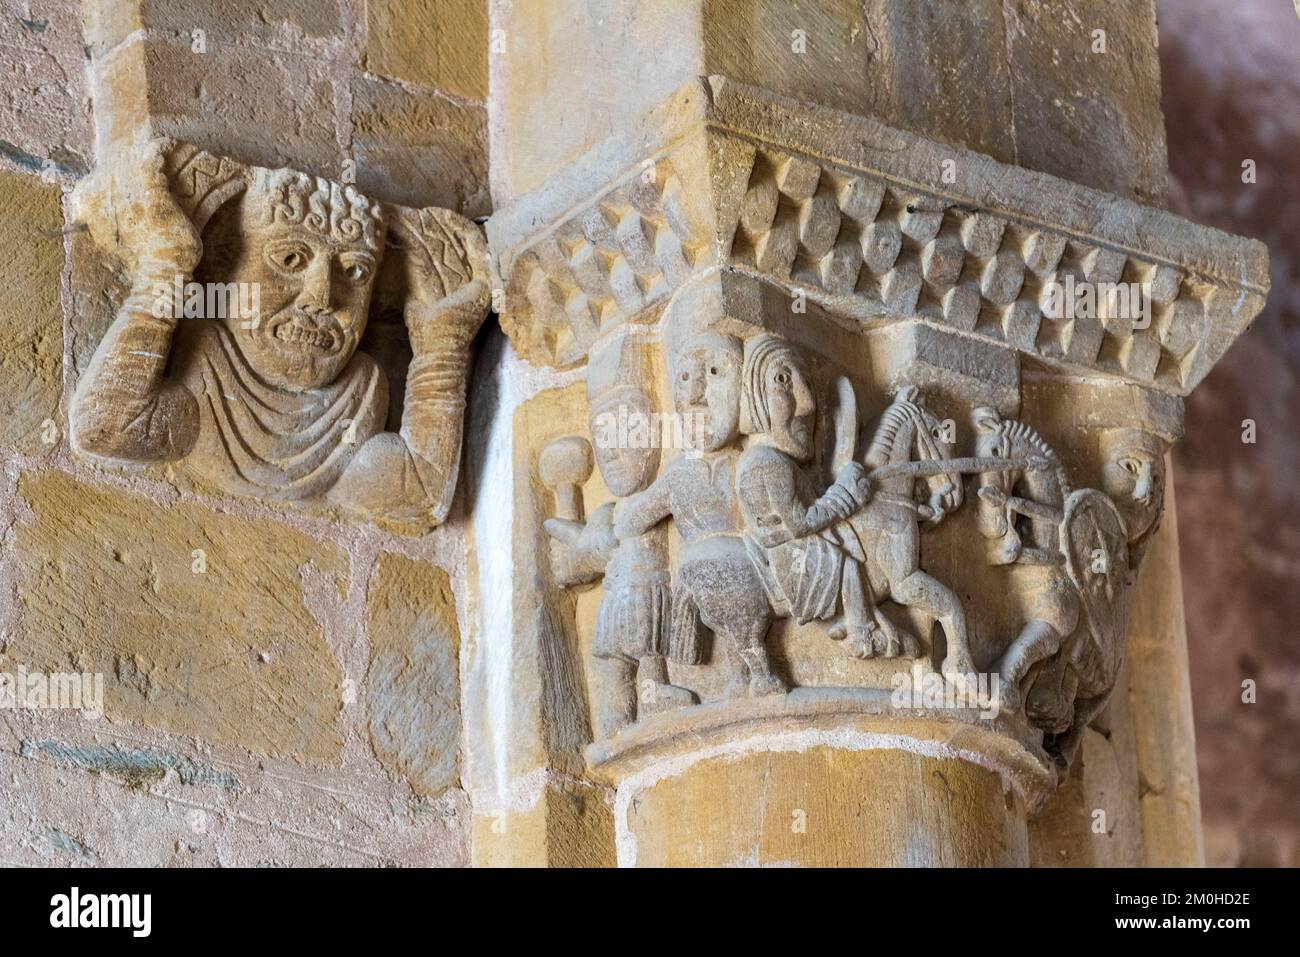 Frankreich, Aveyron, Conques, eines der schönsten Dörfer Frankreichs, Bühne auf dem Weg zur Compostela, der romanischen Abteikirche Sainte Foy, die zum UNESCO-Weltkulturerbe gehört, Hauptstadt der oberen Etage, der Kampf der Ritter Stockfoto